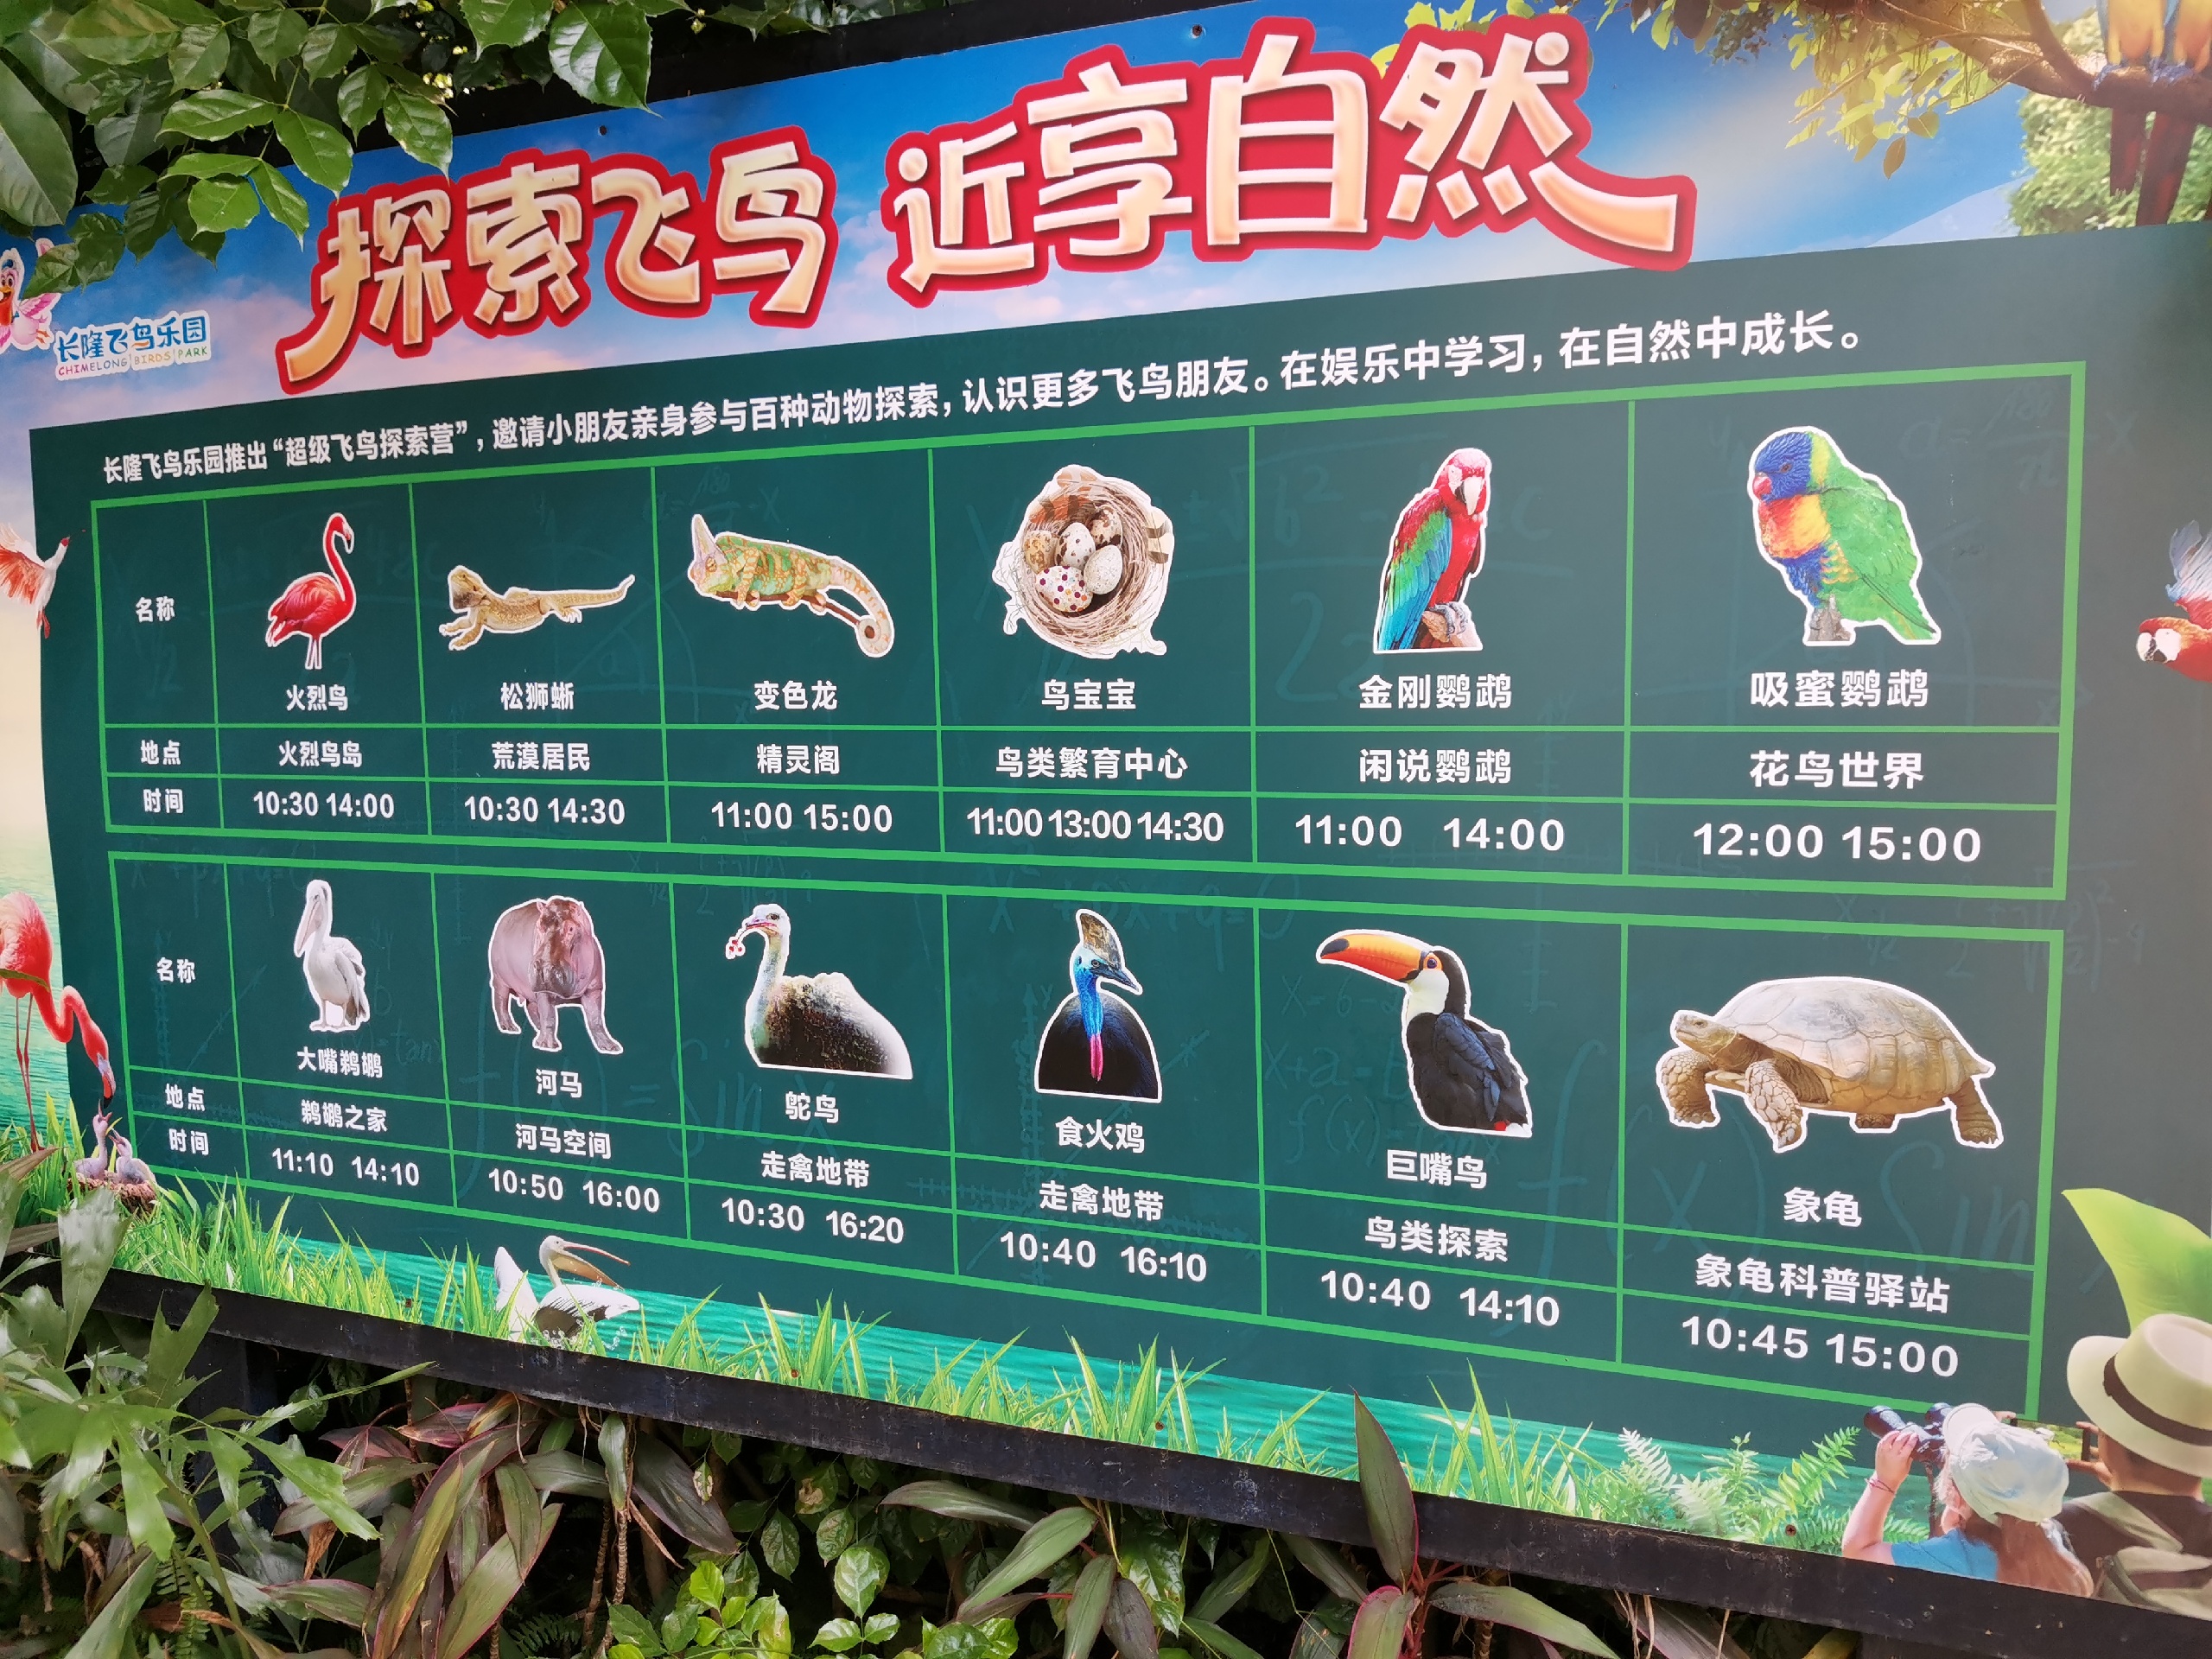 广州亲子游必选之一——长隆飞鸟乐园